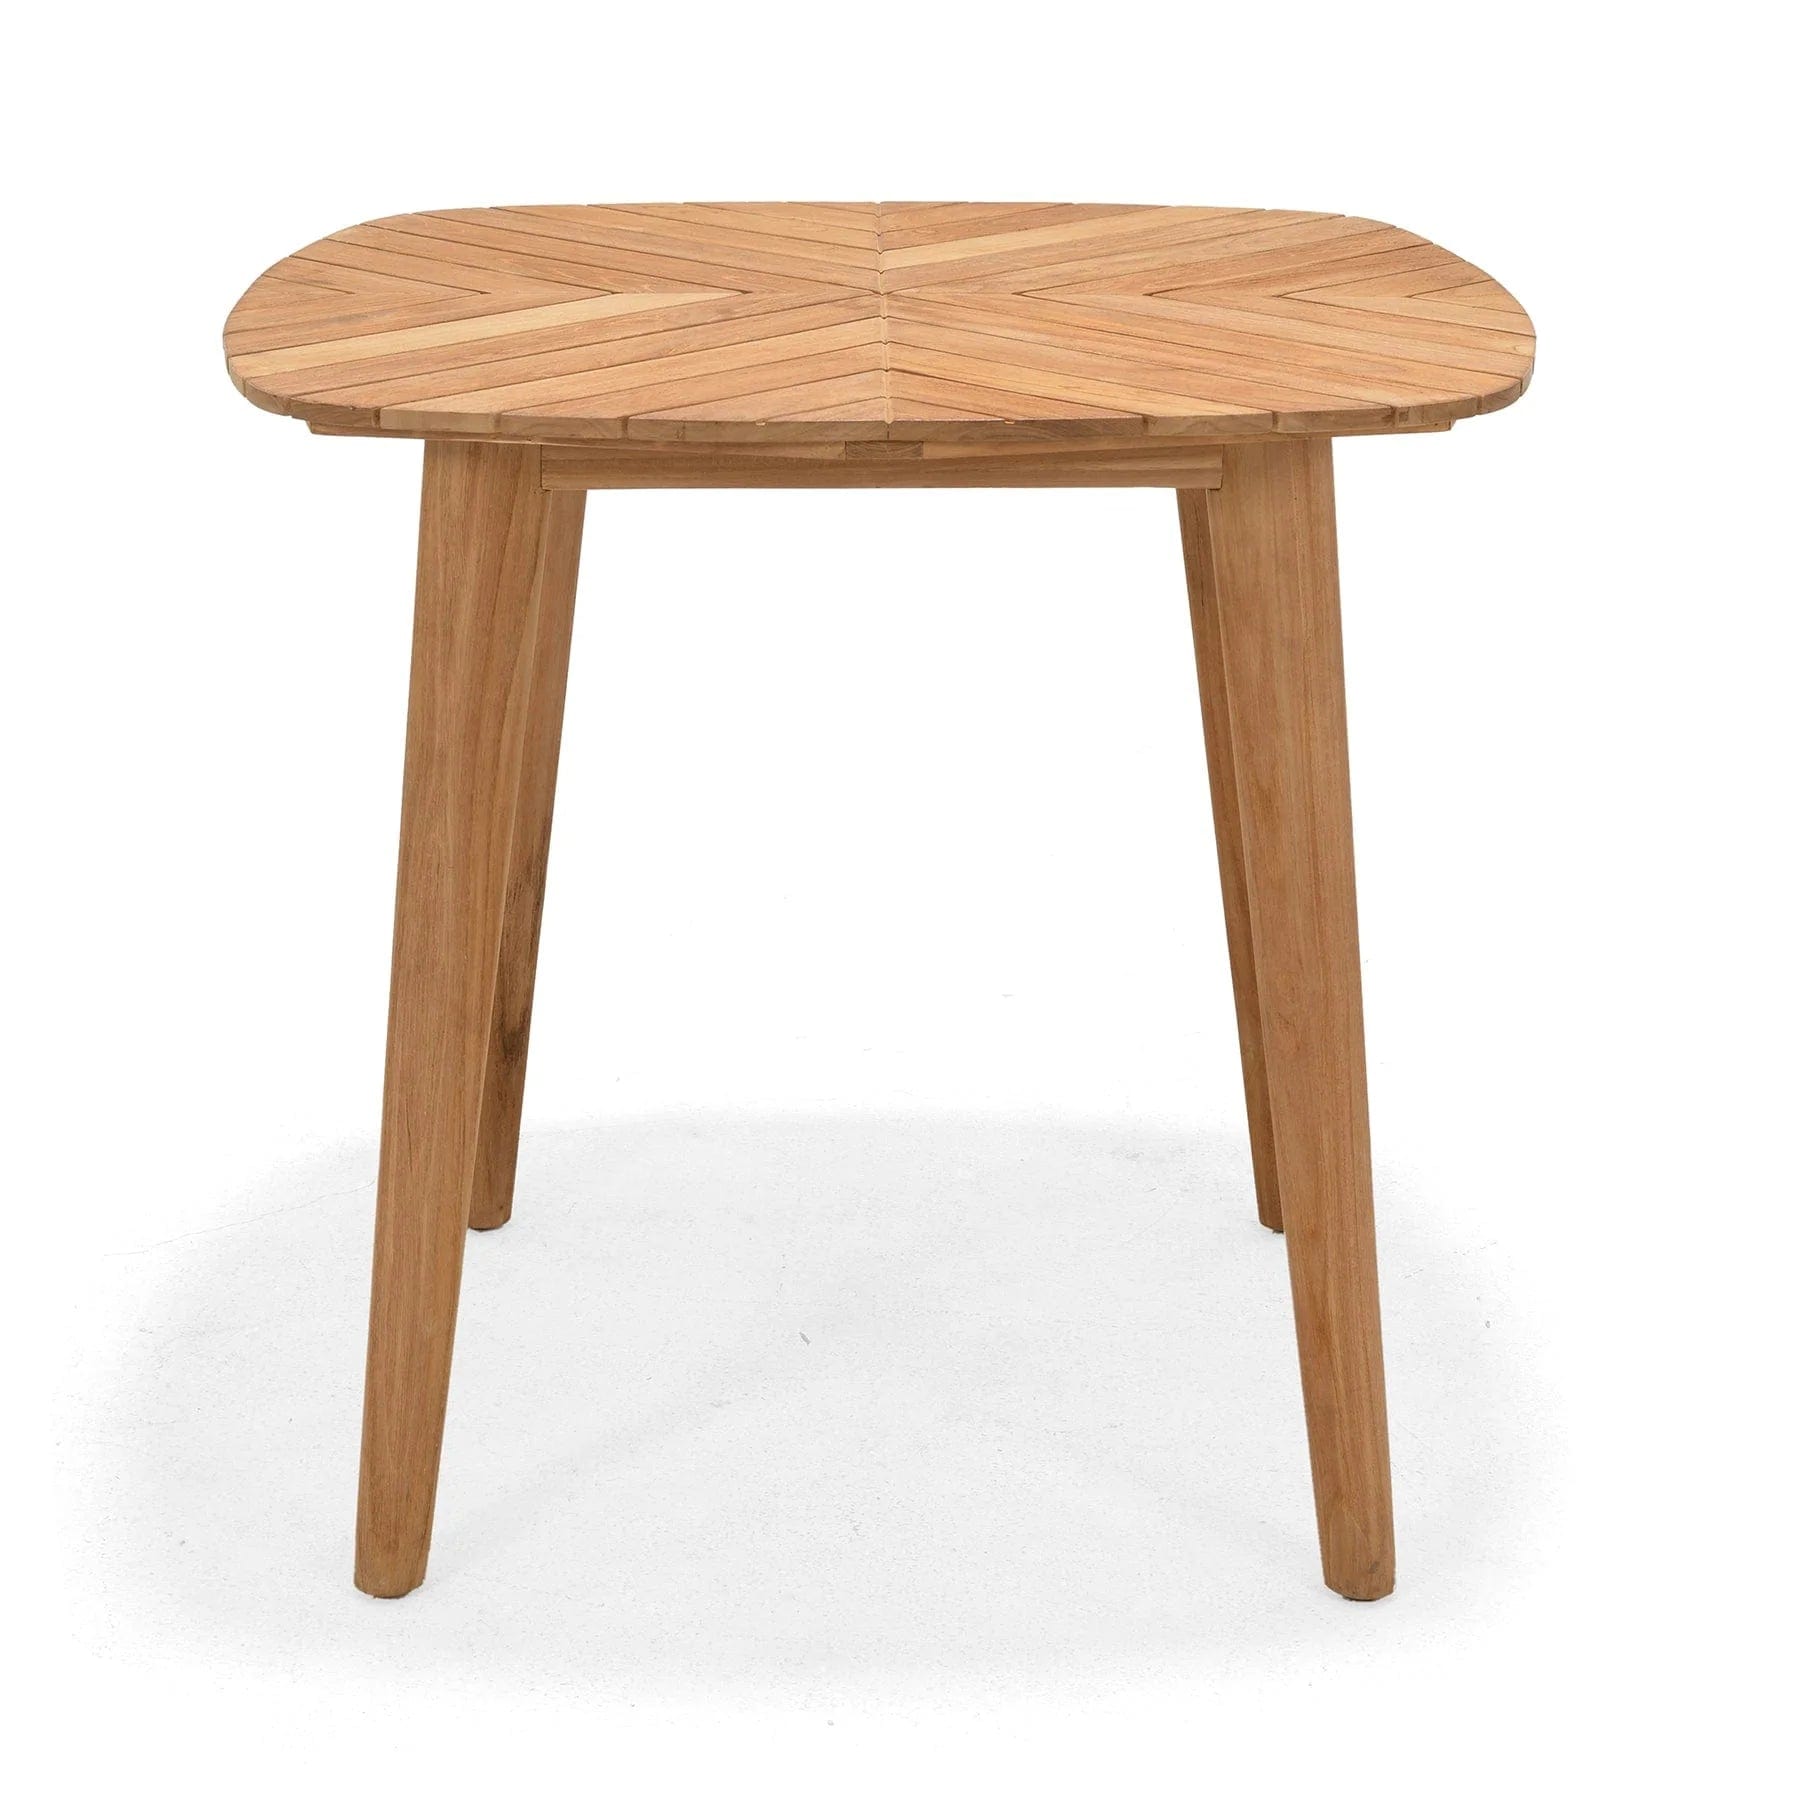 Social Plastic® nassau 2 seat teak table set